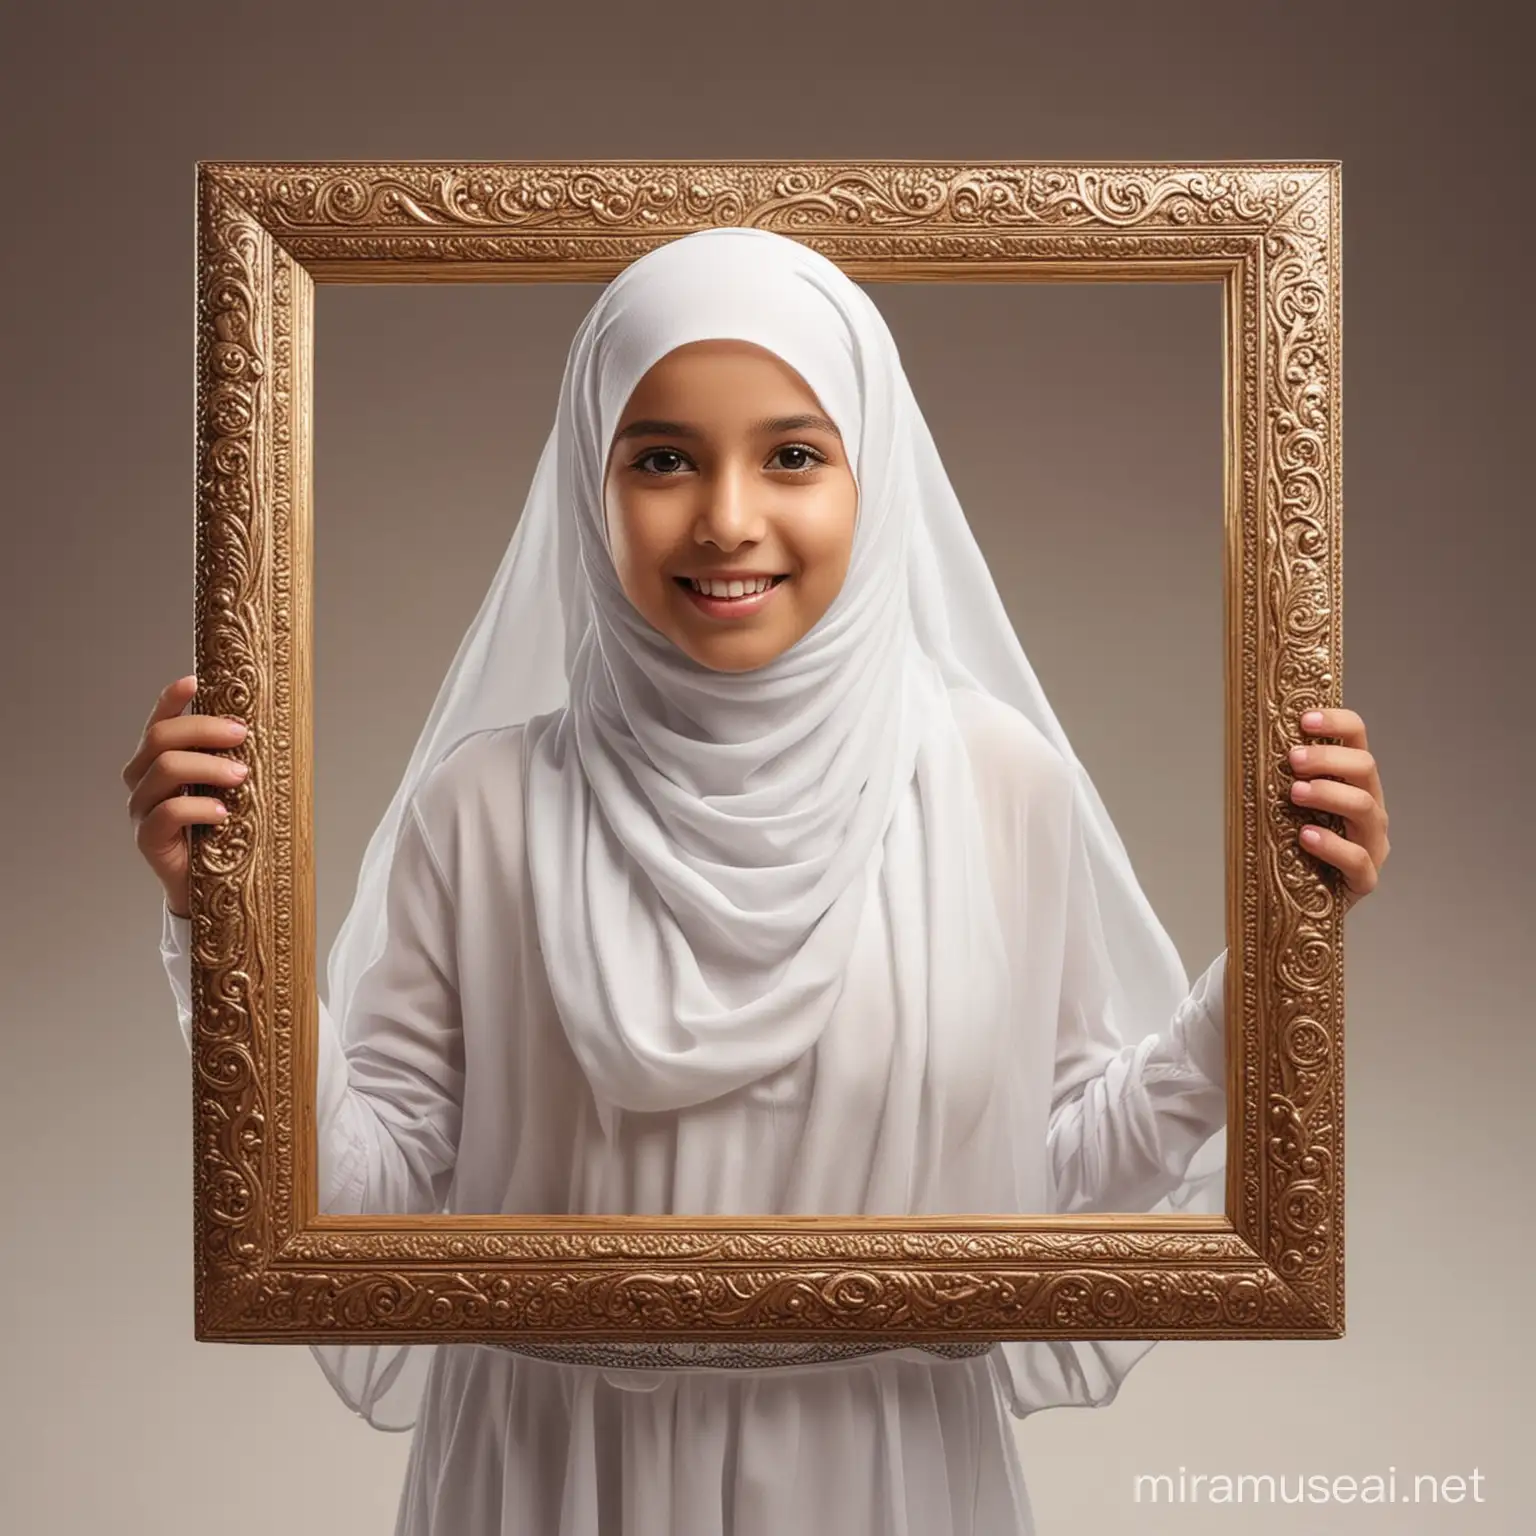 Muslim Girl Adjusting Picture Frame